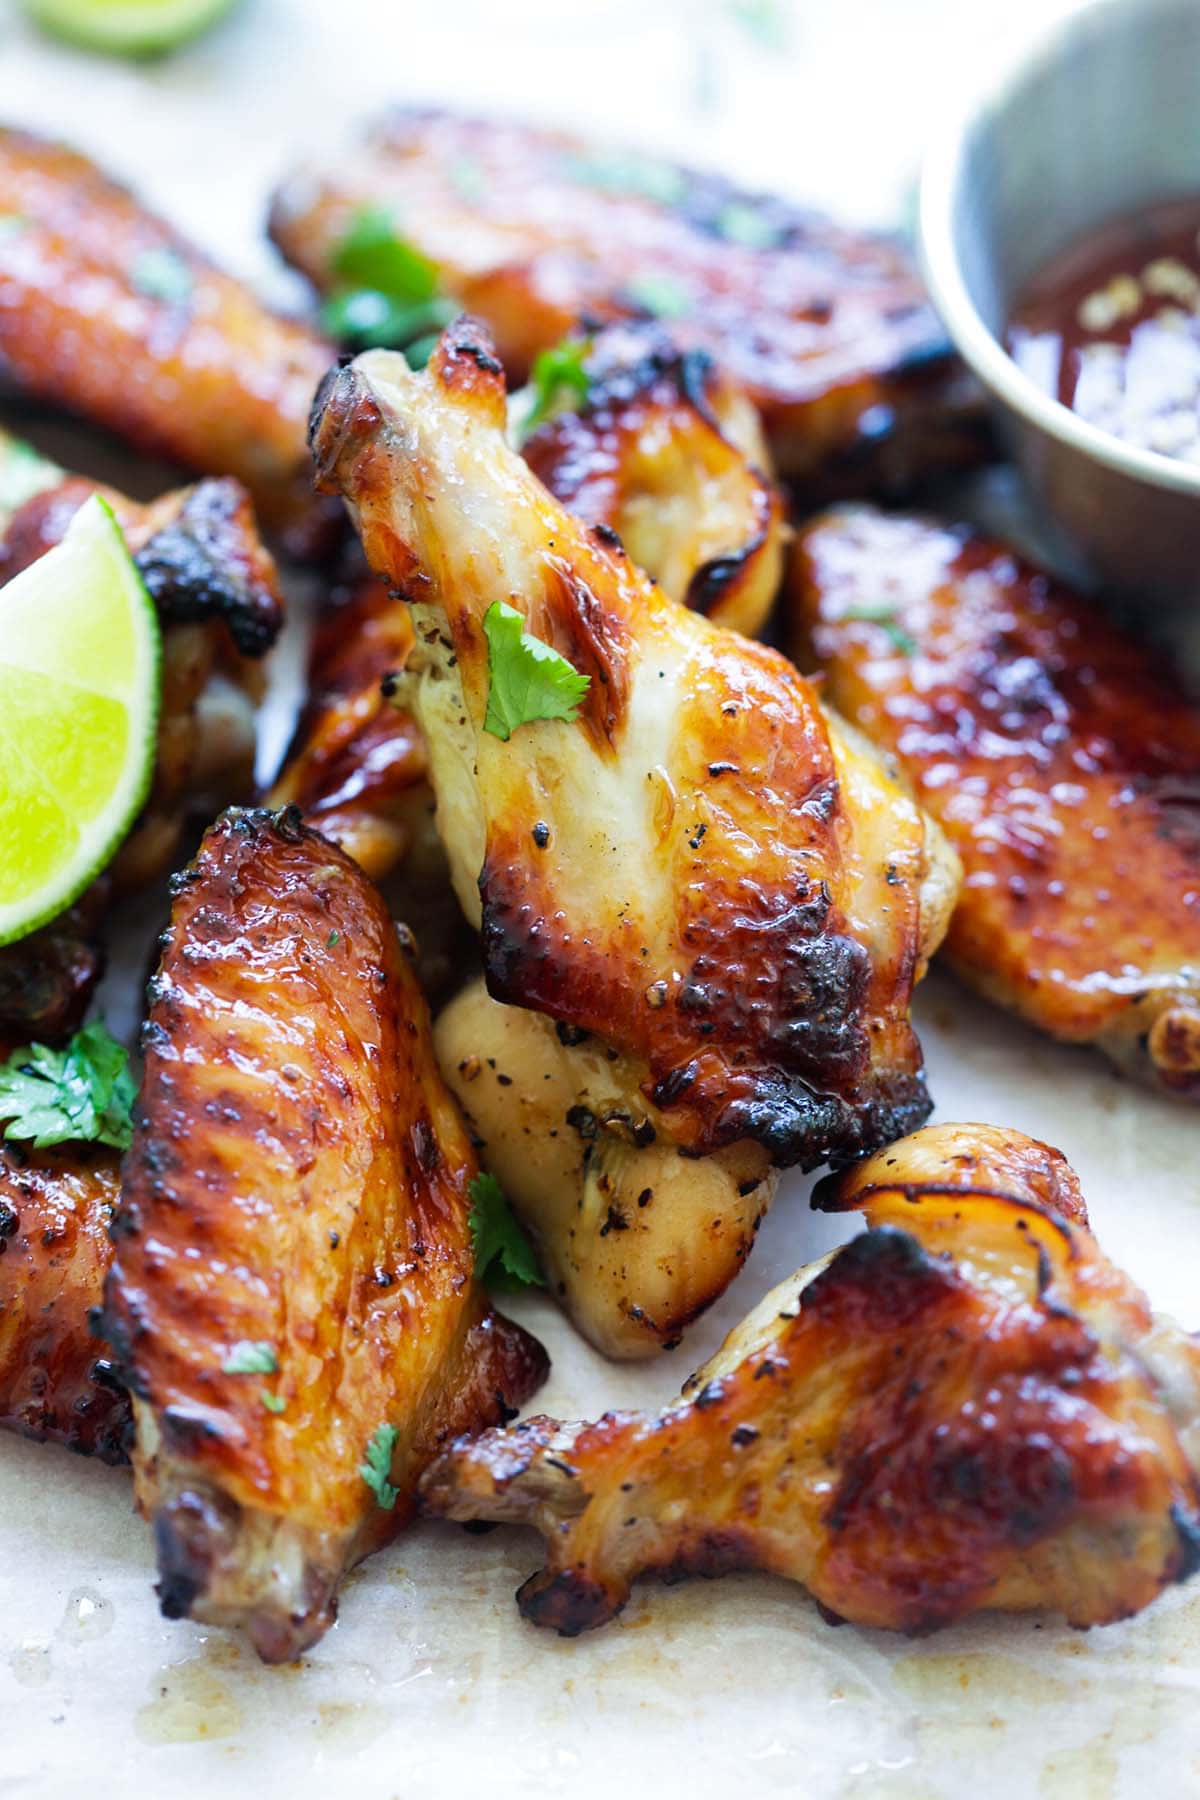 BBQ chicken wings coated with sweet Thai seasonings.